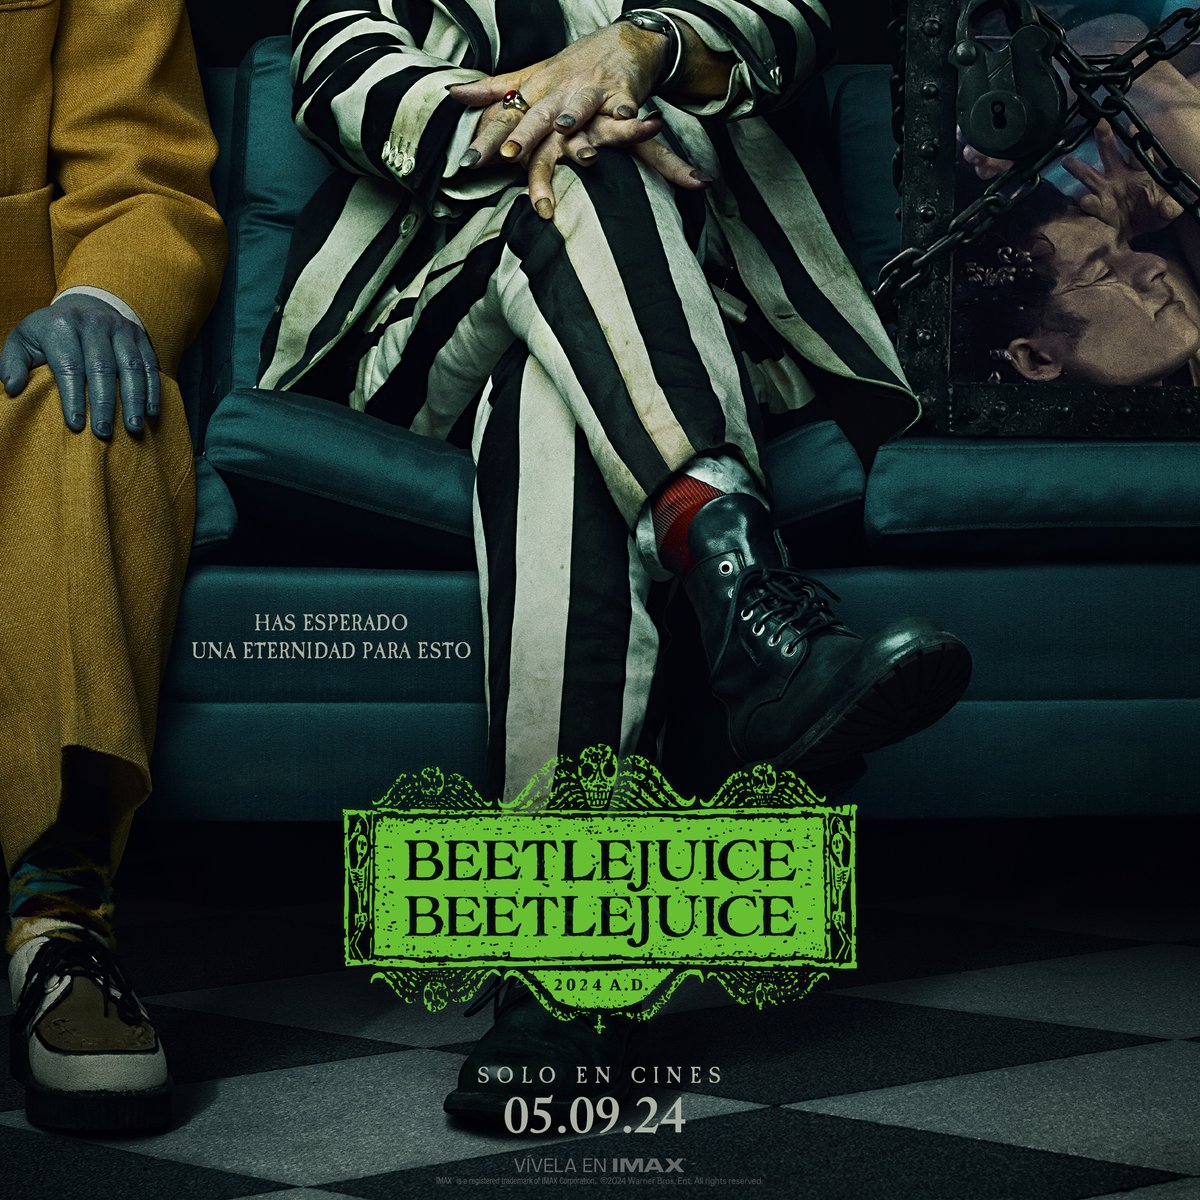 Te guardamos un lugar. Tráiler este jueves. #Beetlejuice #Beetlejuice – 5 de septiembre, solo en cines.